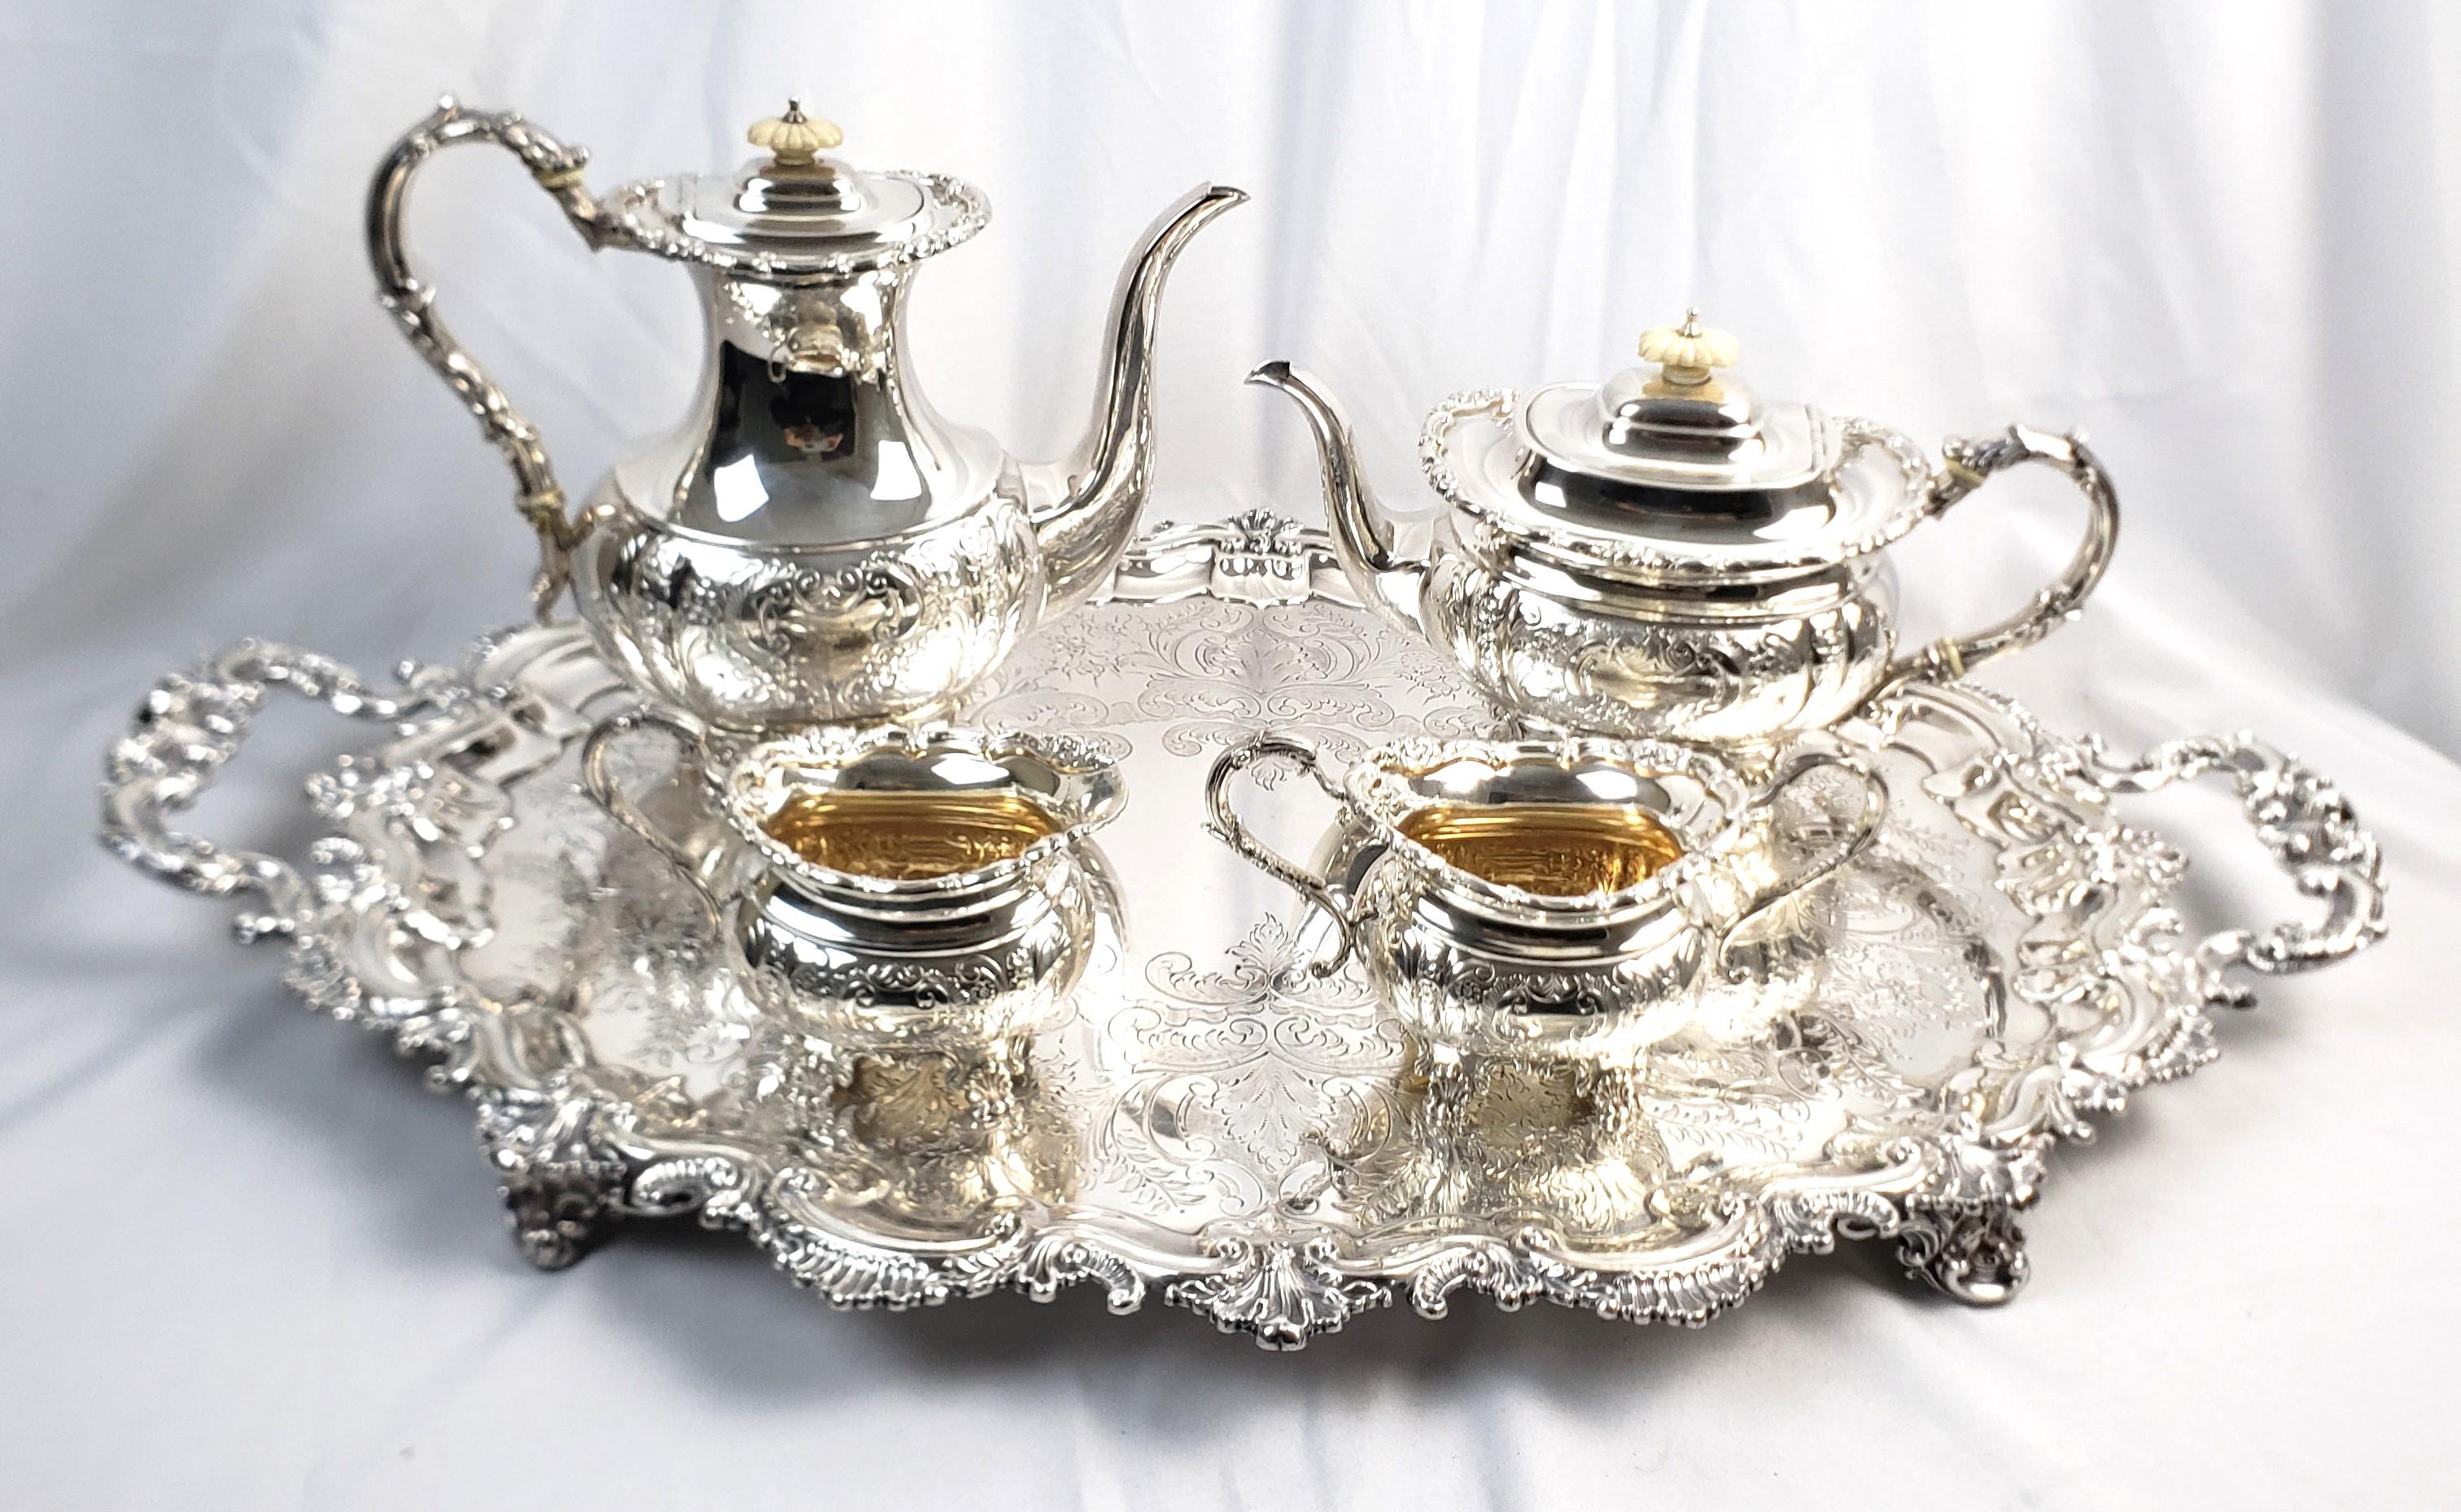 Dieses antike Teeservice wurde von einem unbekannten Hersteller hergestellt, aber das Set und das Tablett stammen aus England und sind im viktorianischen Stil um 1850 entstanden. Das vierteilige Teeservice ist aus Sterlingsilber gefertigt und die